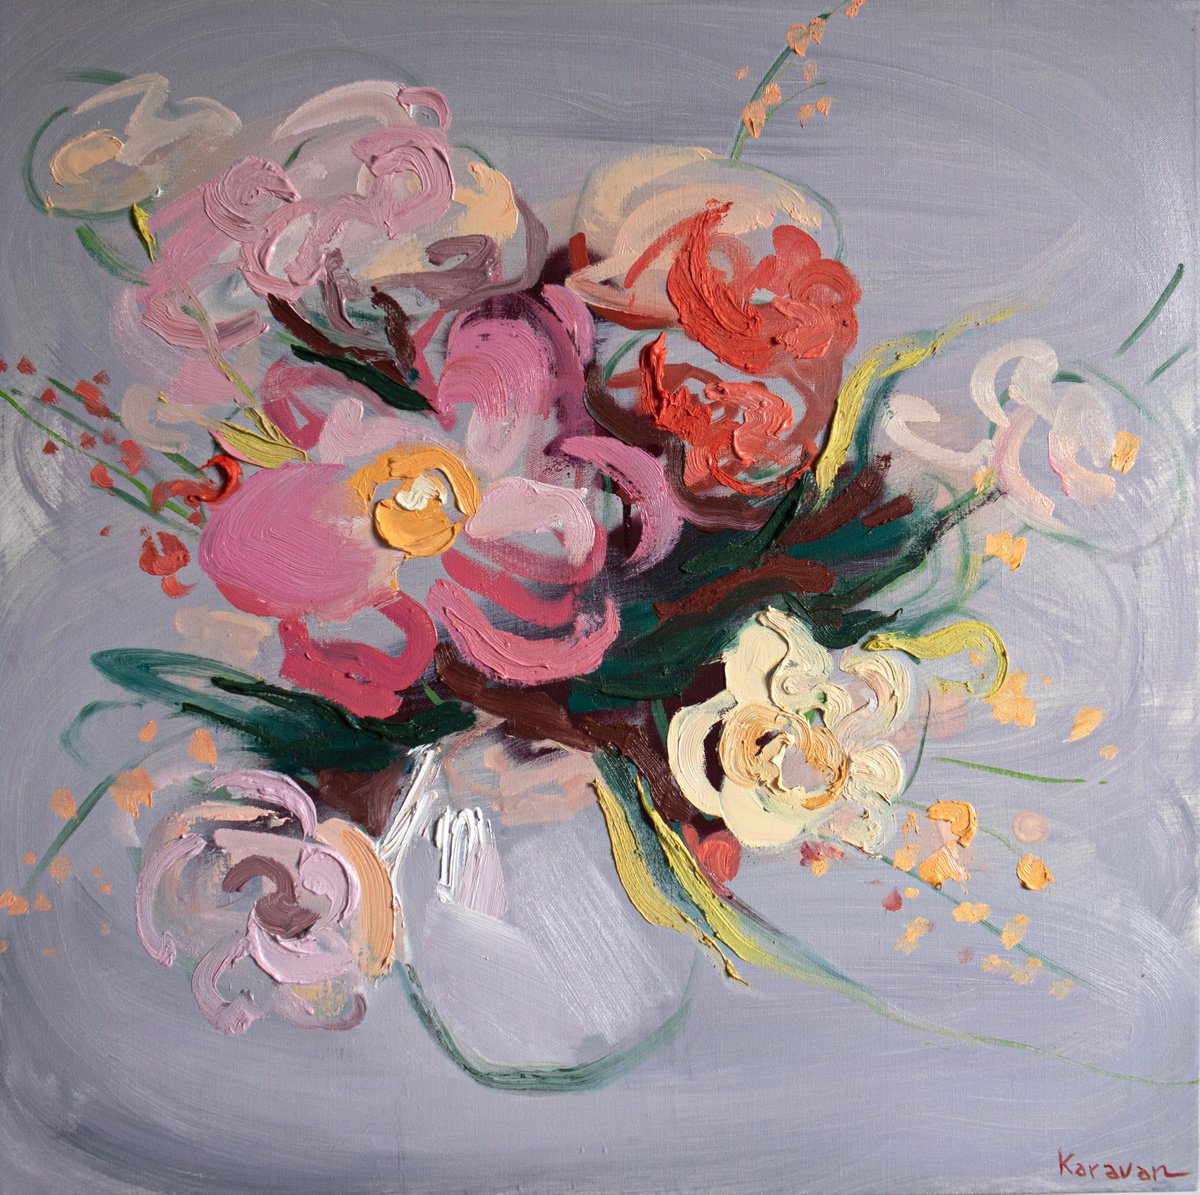 Vase of flowers by Nataliia Karavan